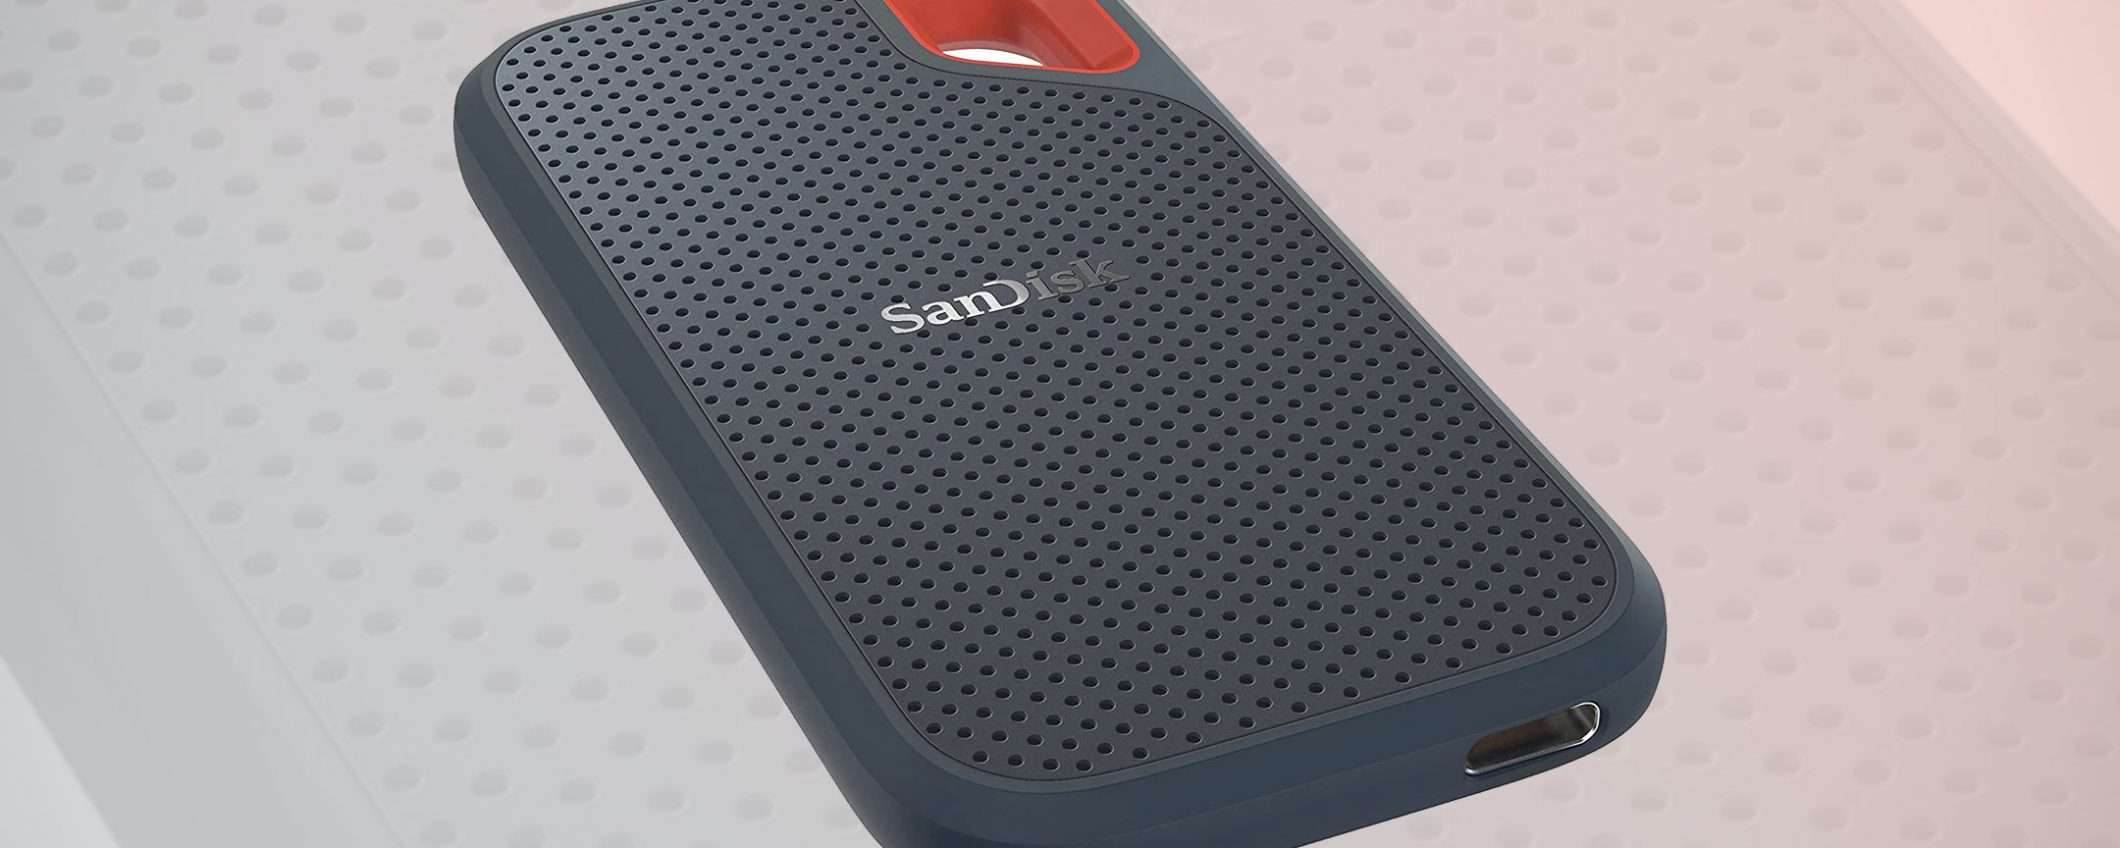 SSD portatile SanDisk da 250 GB a -46% su Amazon